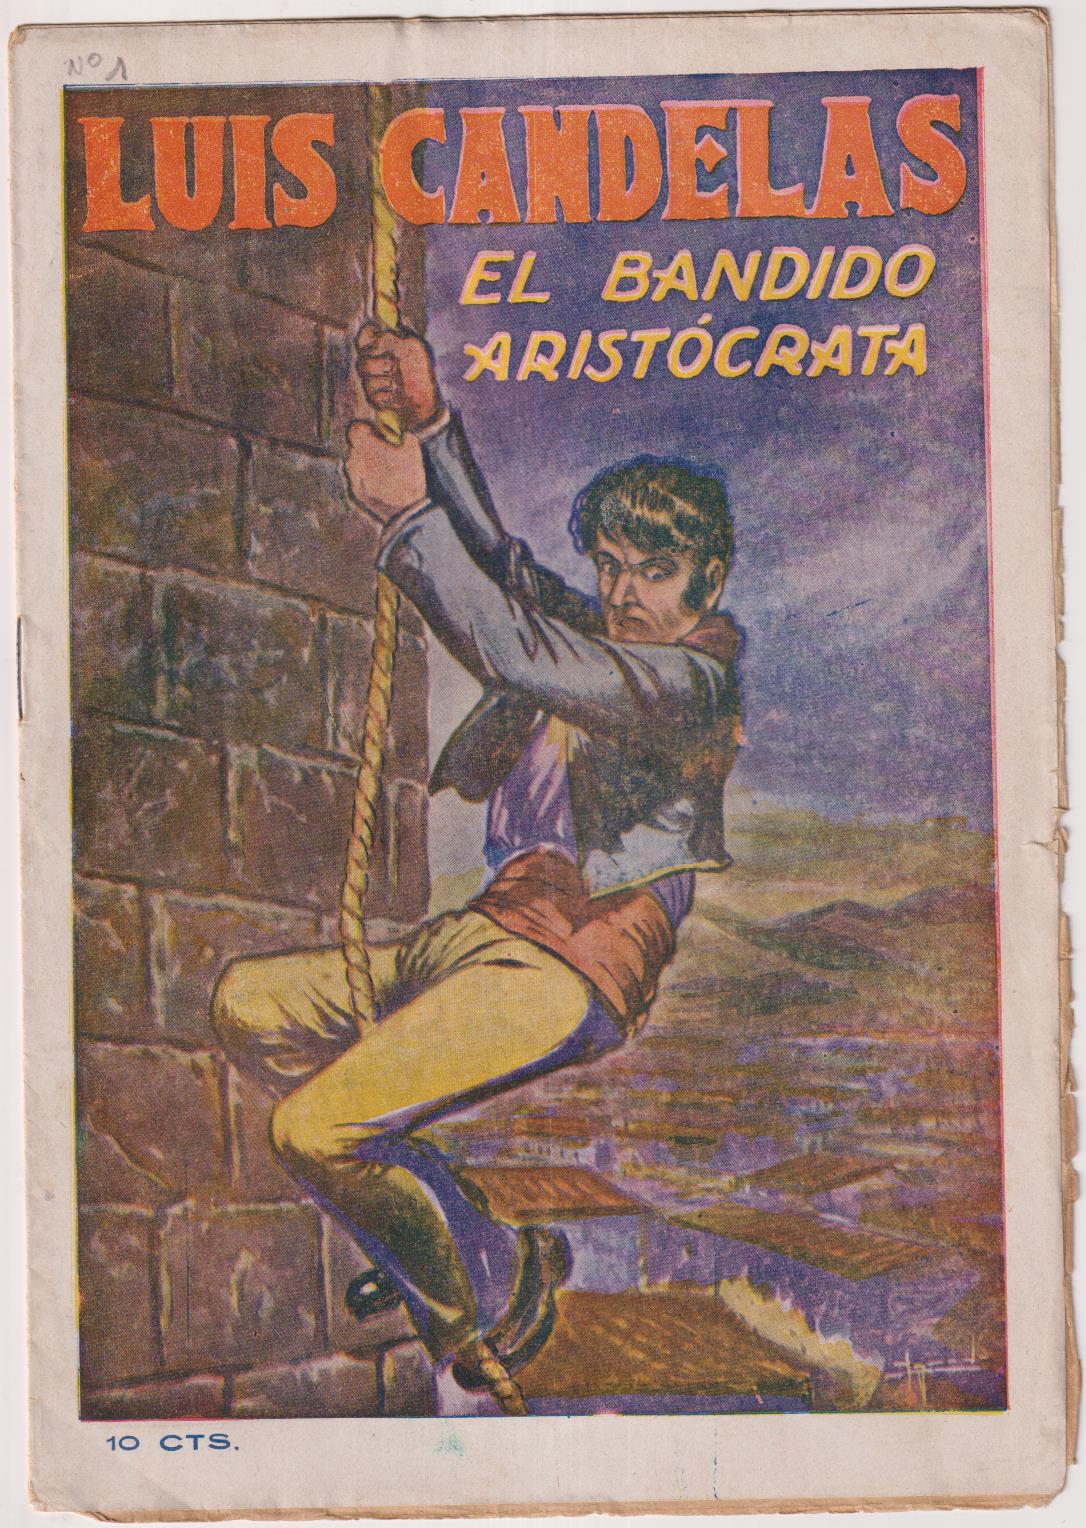 Luis Candelas nº 1. El Bandido Aristócrata. EditoriAL Vincit. SIN ABRIR